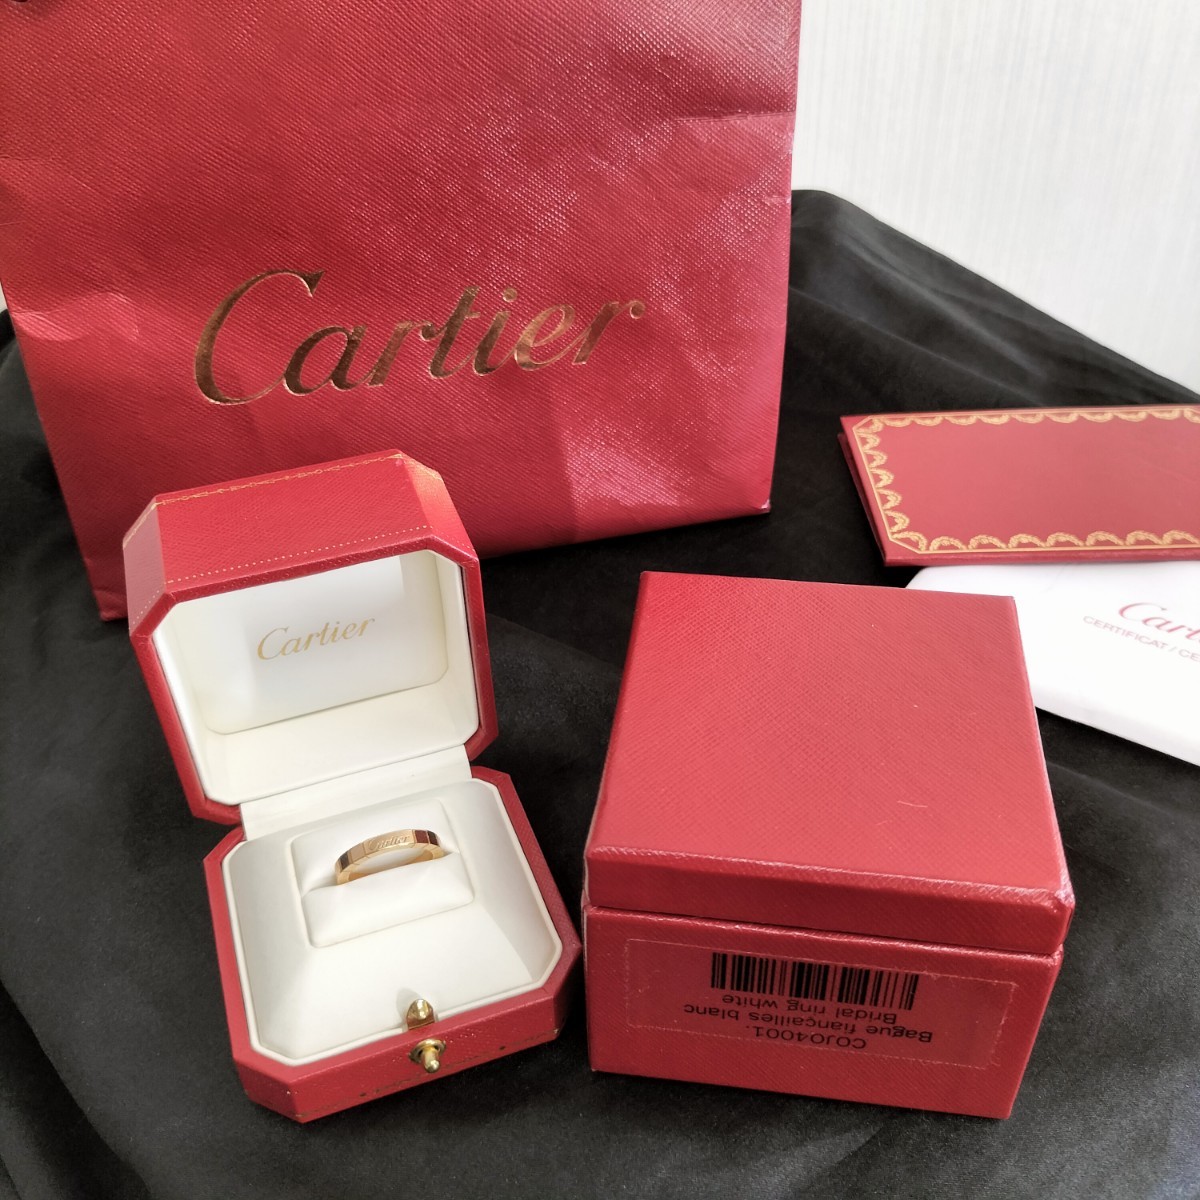 Cartier カルティエ ラニエール K18 リング 外箱 証明書 紙袋付 中古品 全国即日発送 B4048351 FK9148 購入日 07.02.04